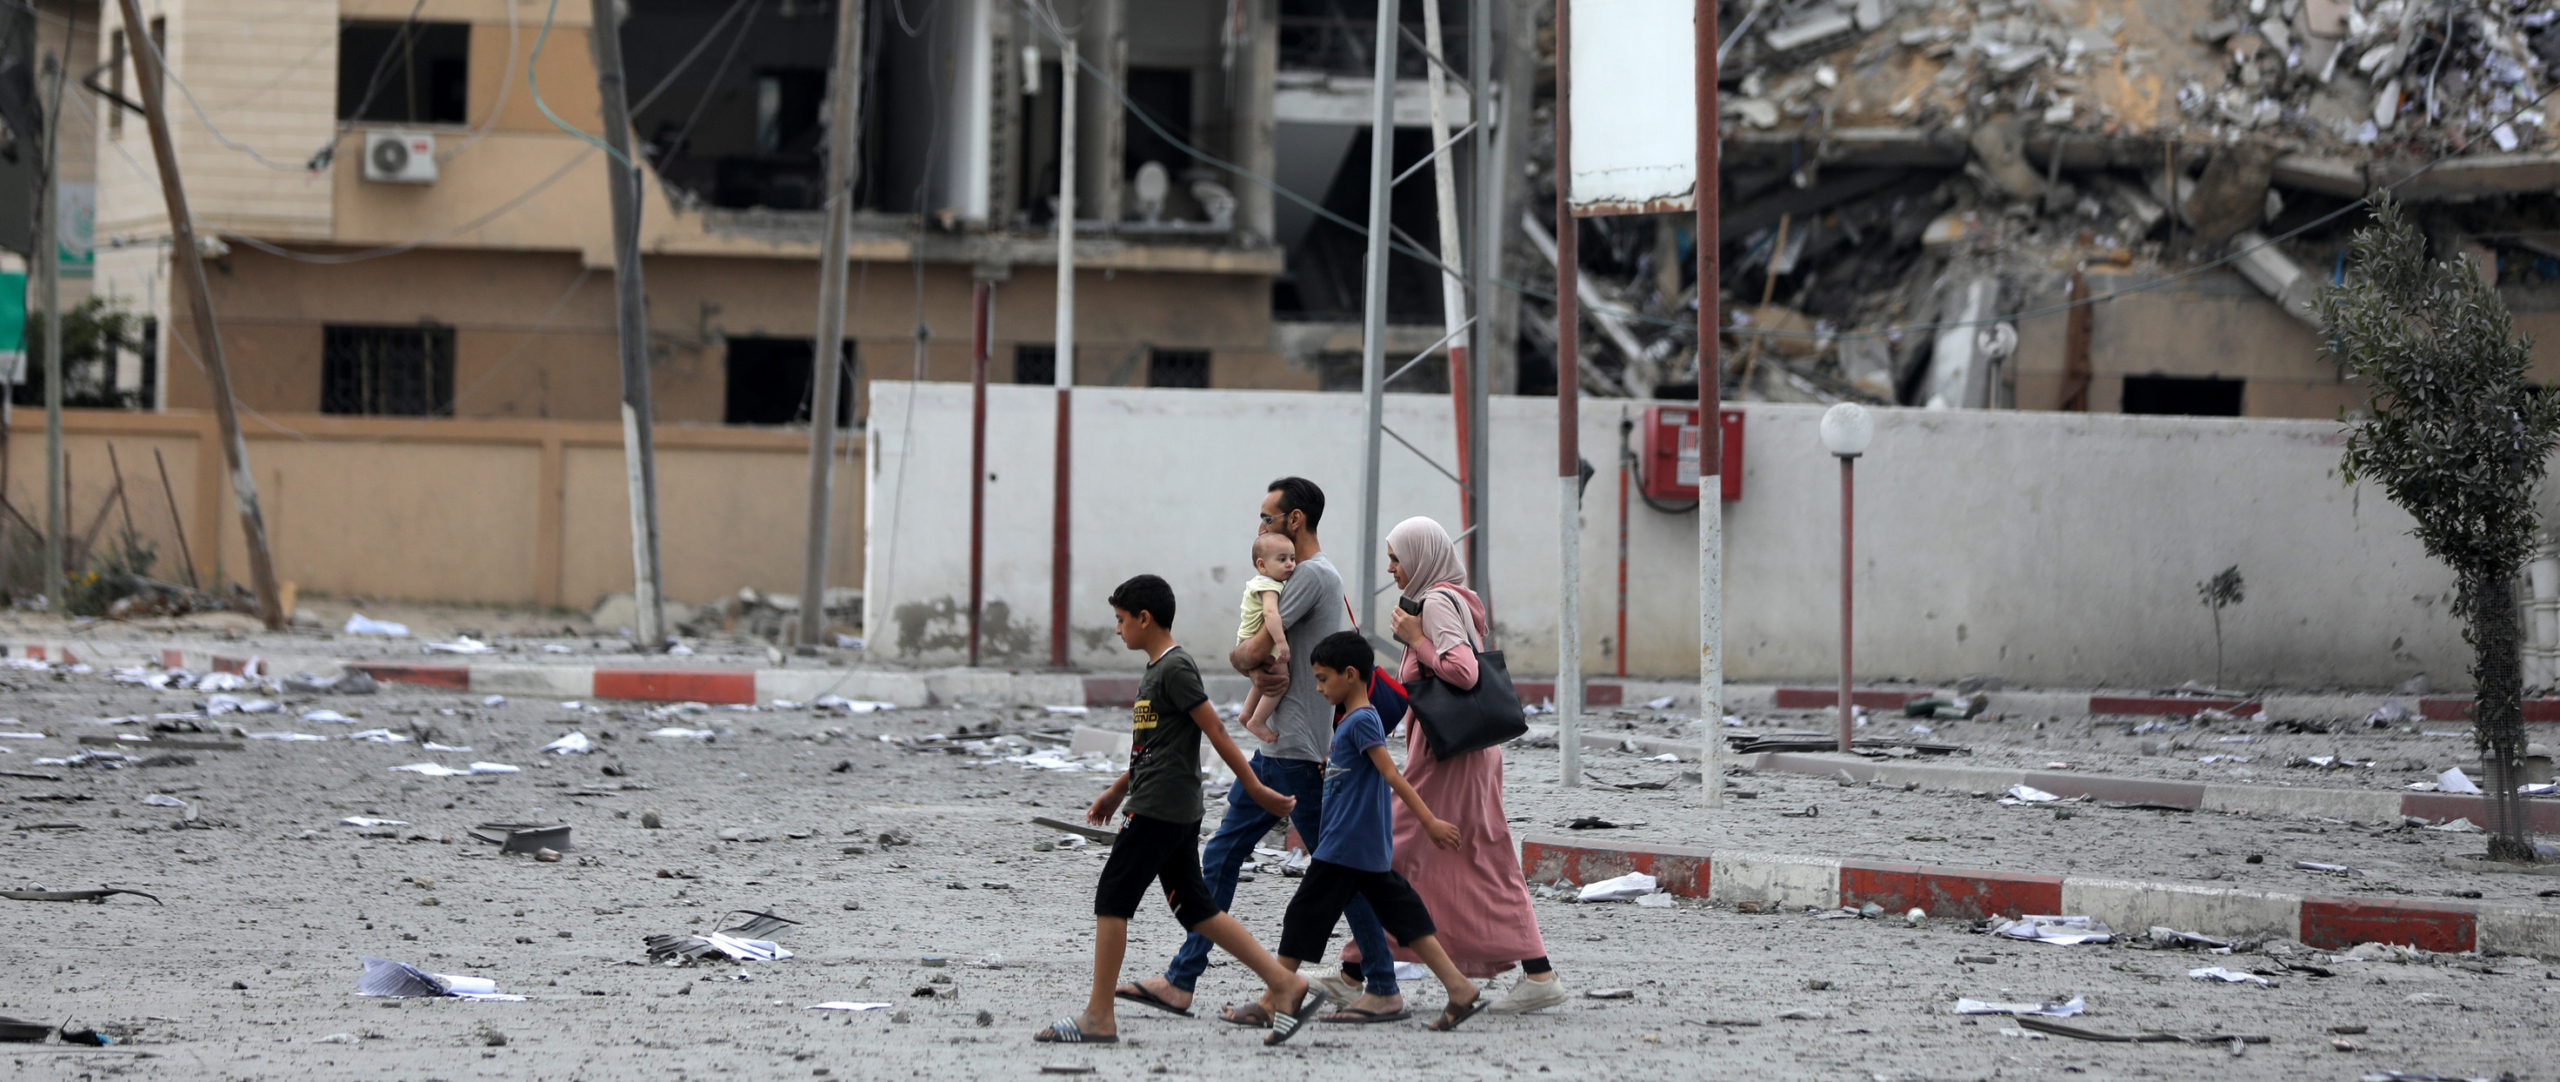 Journée d’action internationale, l’appel au cessez-le-feu à Gaza fait écho à travers le monde